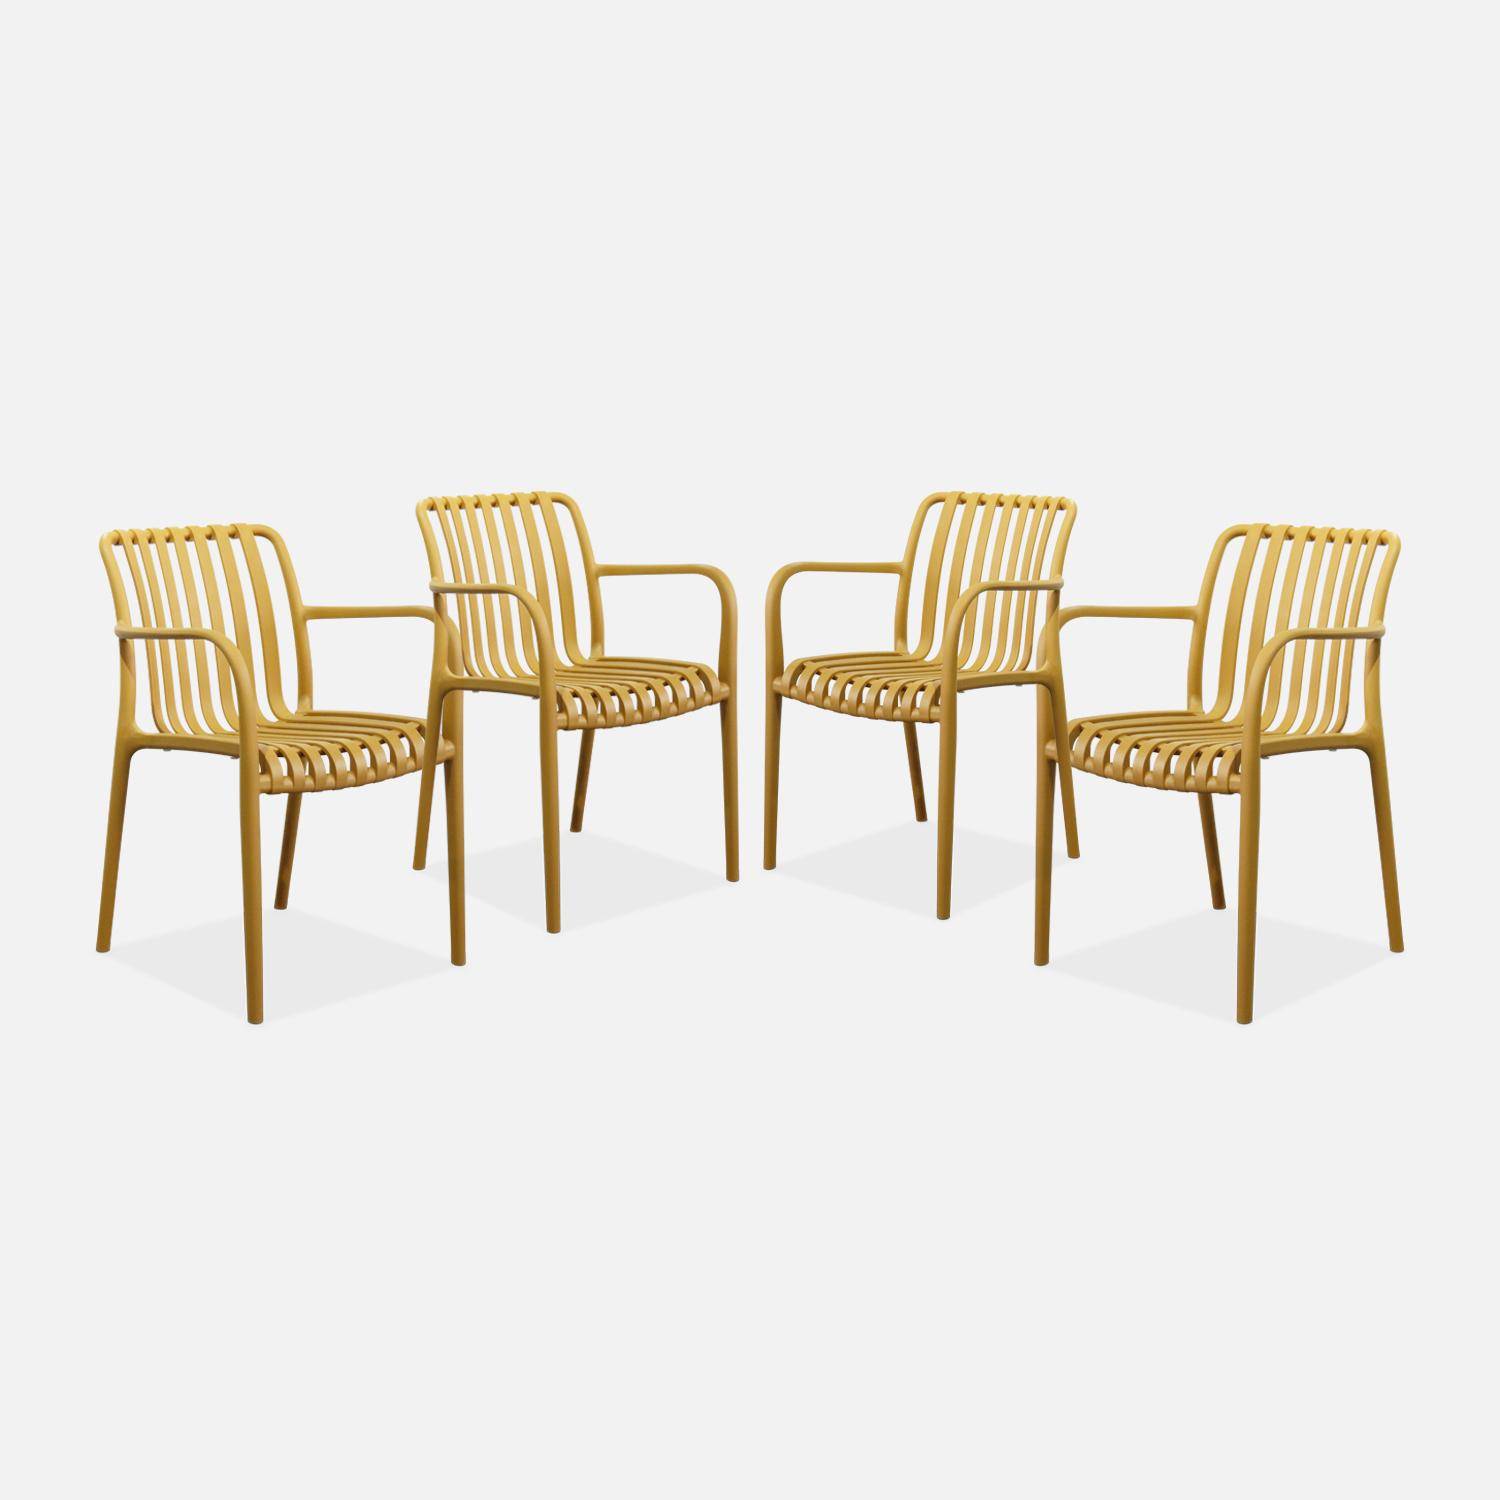 Lot de 4 fauteuils de jardin en plastique moutarde, empilables, design linéaire  Photo1